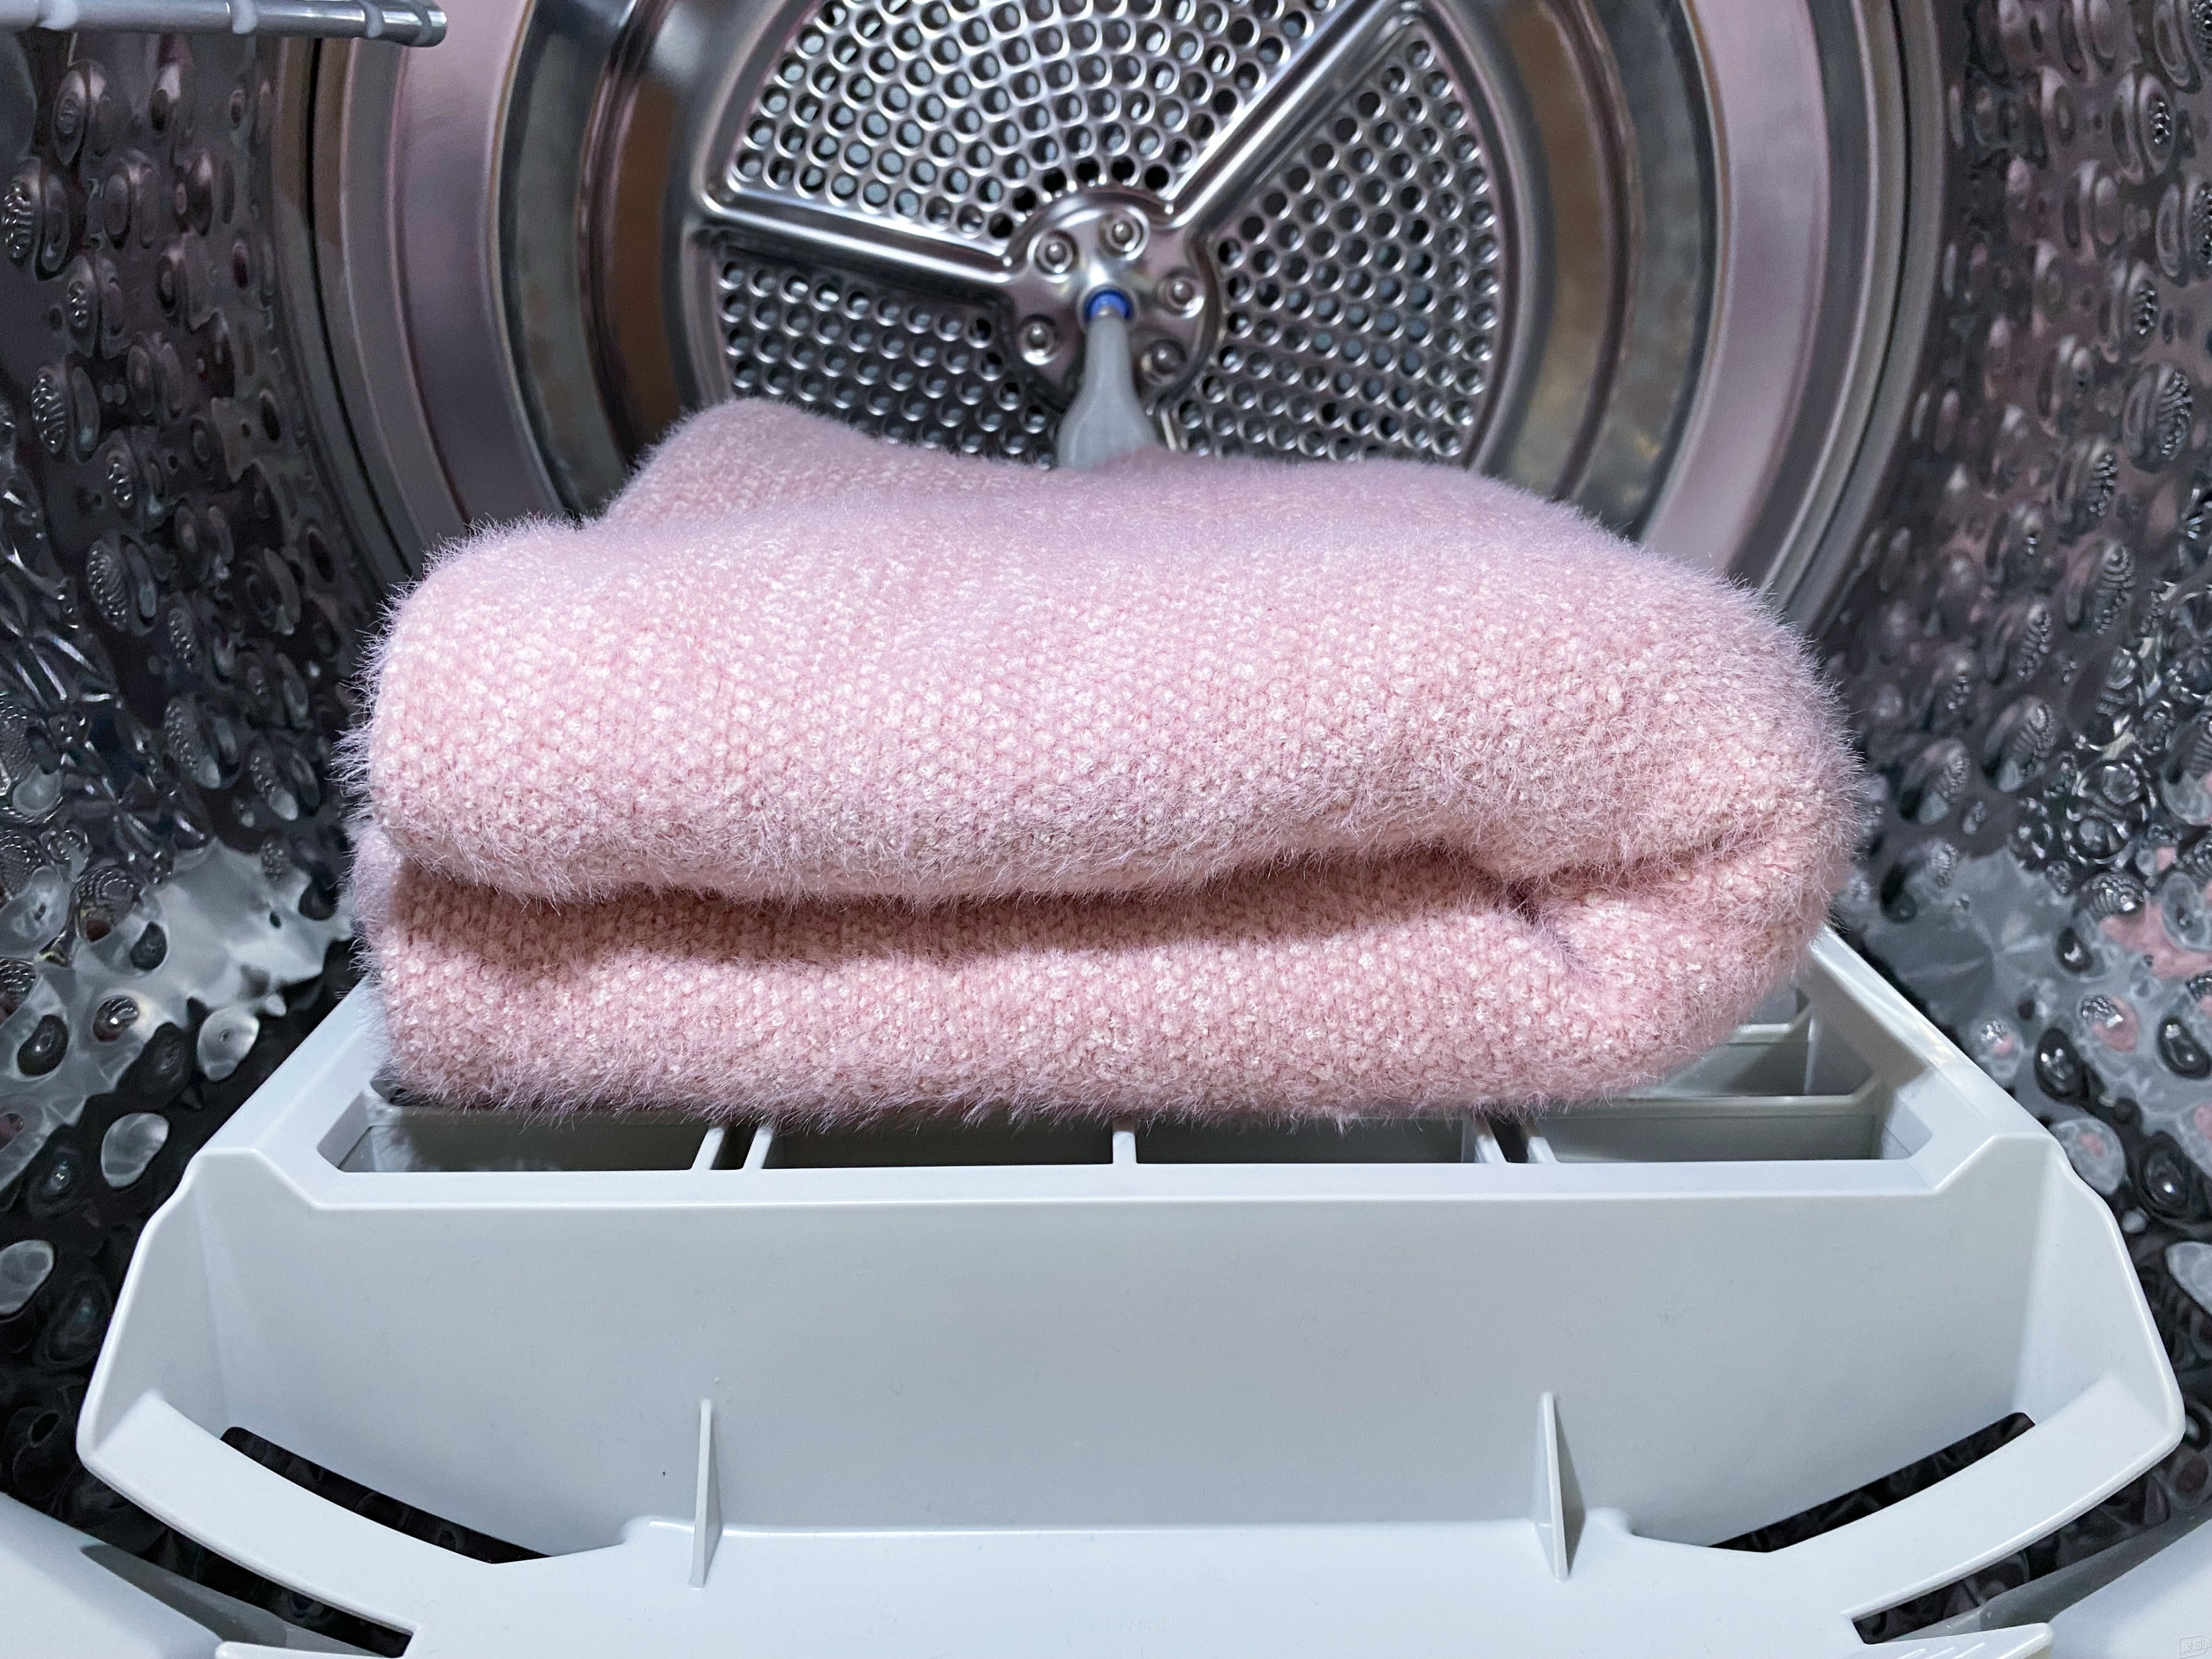 烘干机还是要选热泵式的！LG大容量洗烘套装5K字使用体验真实分享